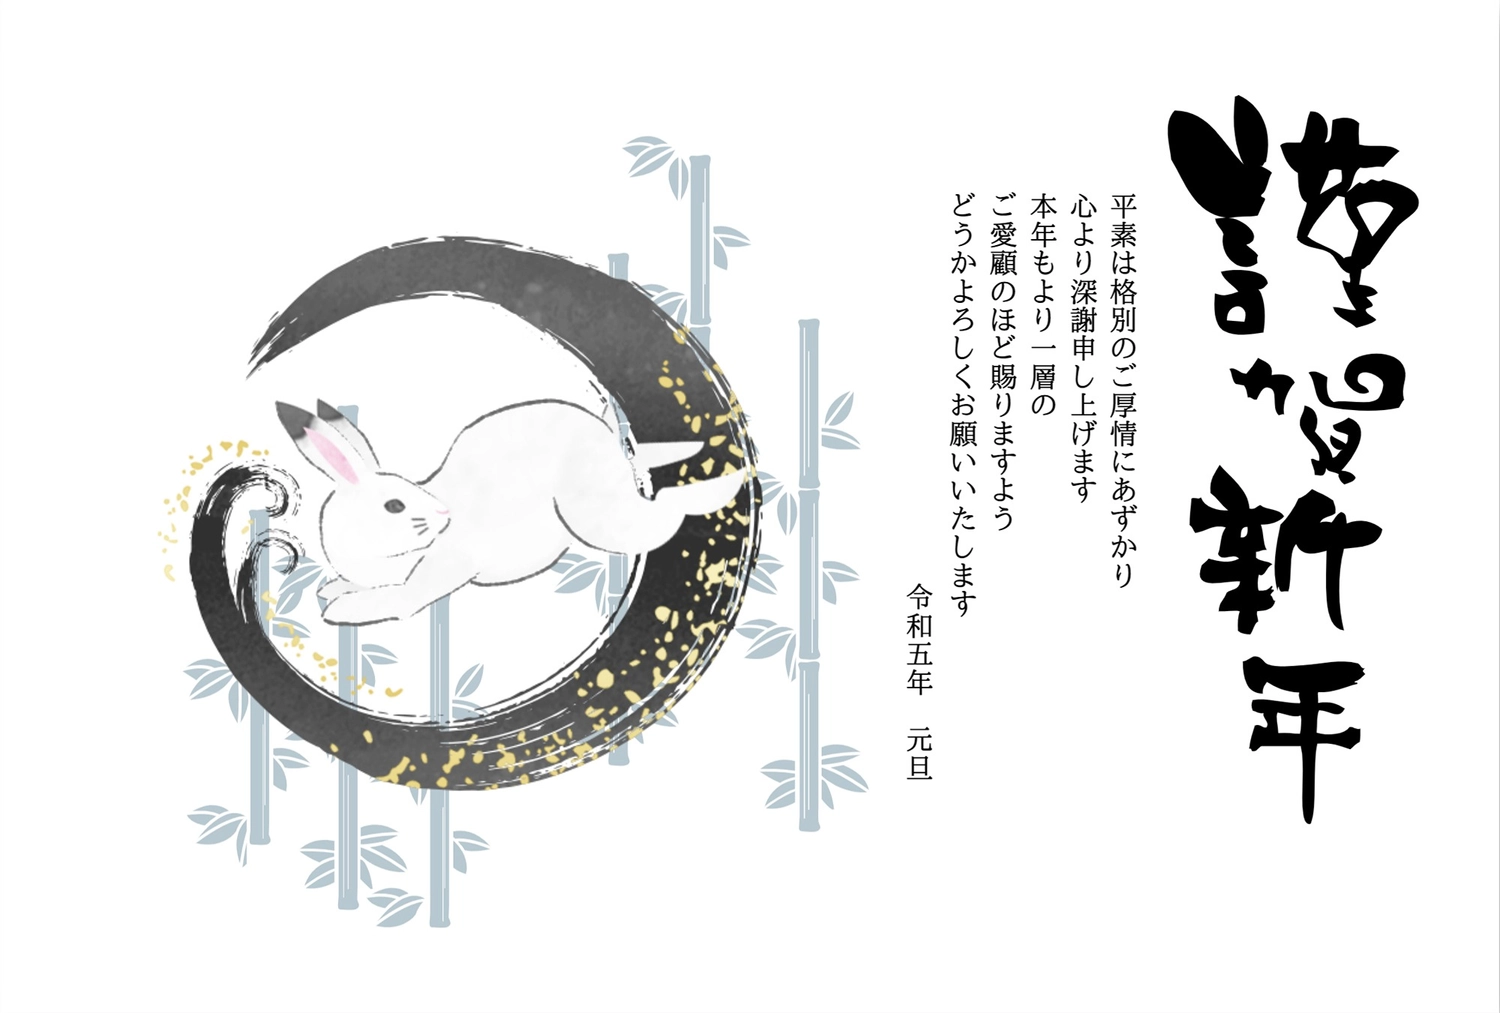 年賀状　水墨画風うさぎと竹林, New Year's card, ink painting style, bamboo forest, New Year Card template